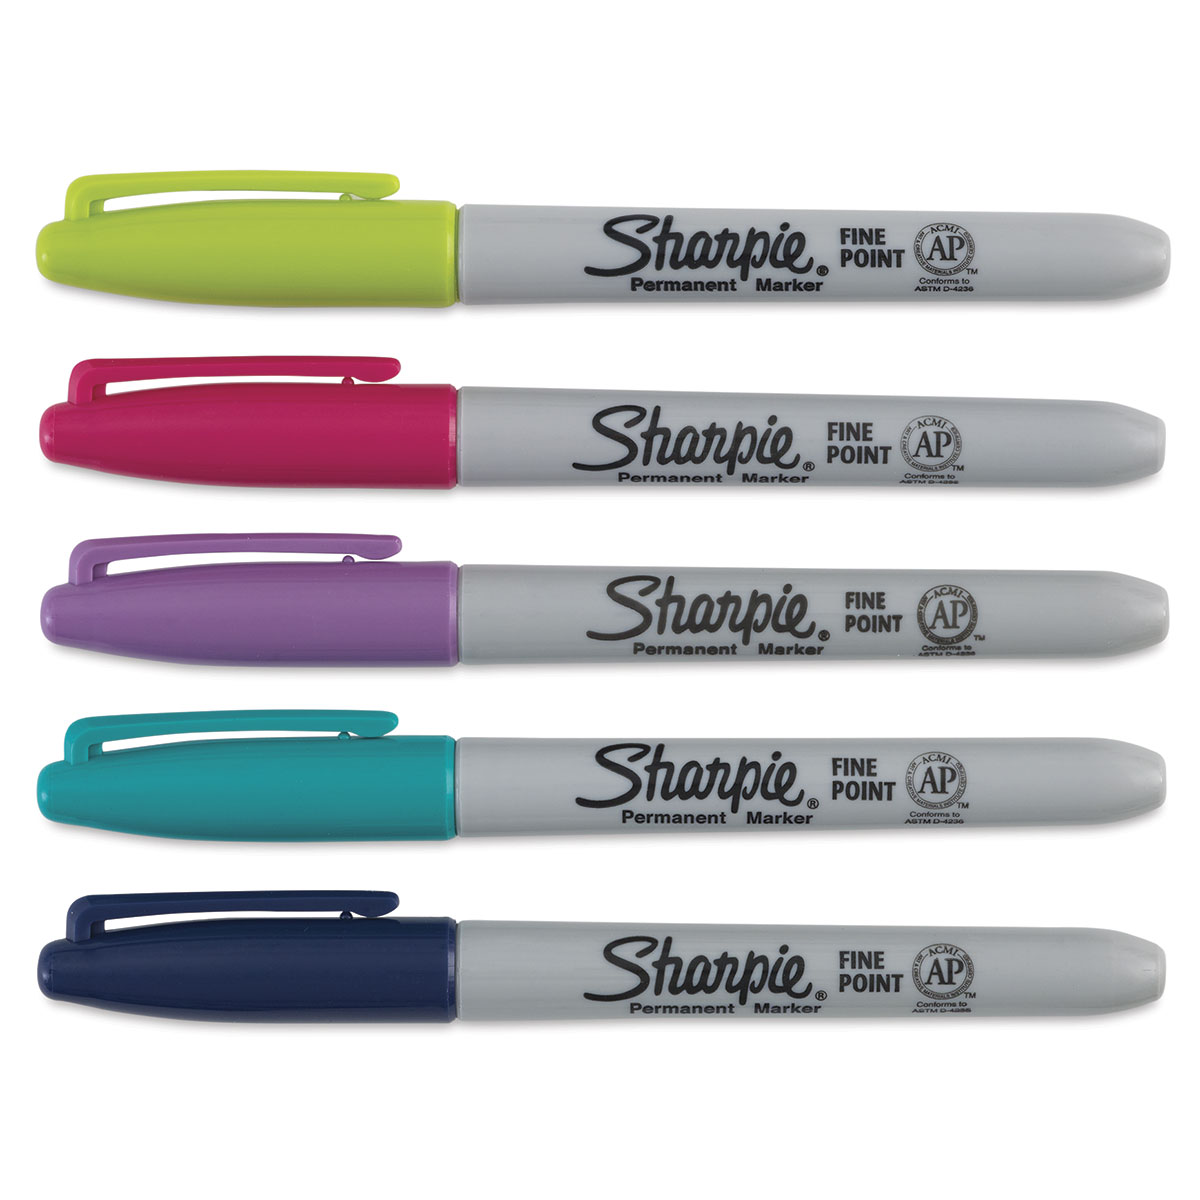 Sharpie Fine Point Permanent Marker - Jetset Jade 